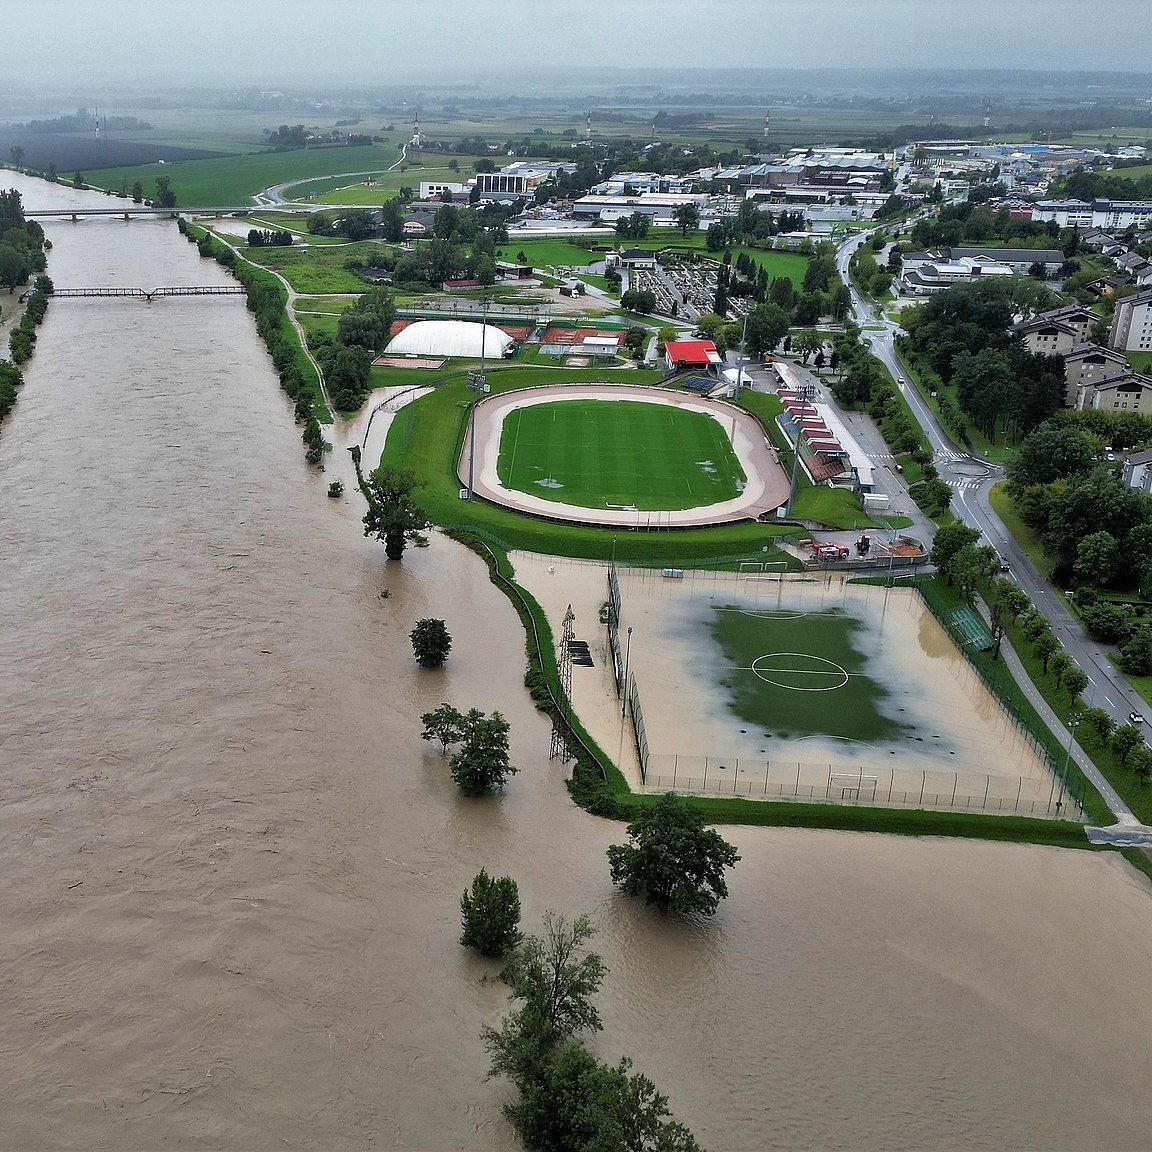 Fluss ist über Ufer getreten und hat Stadion überschwemmt